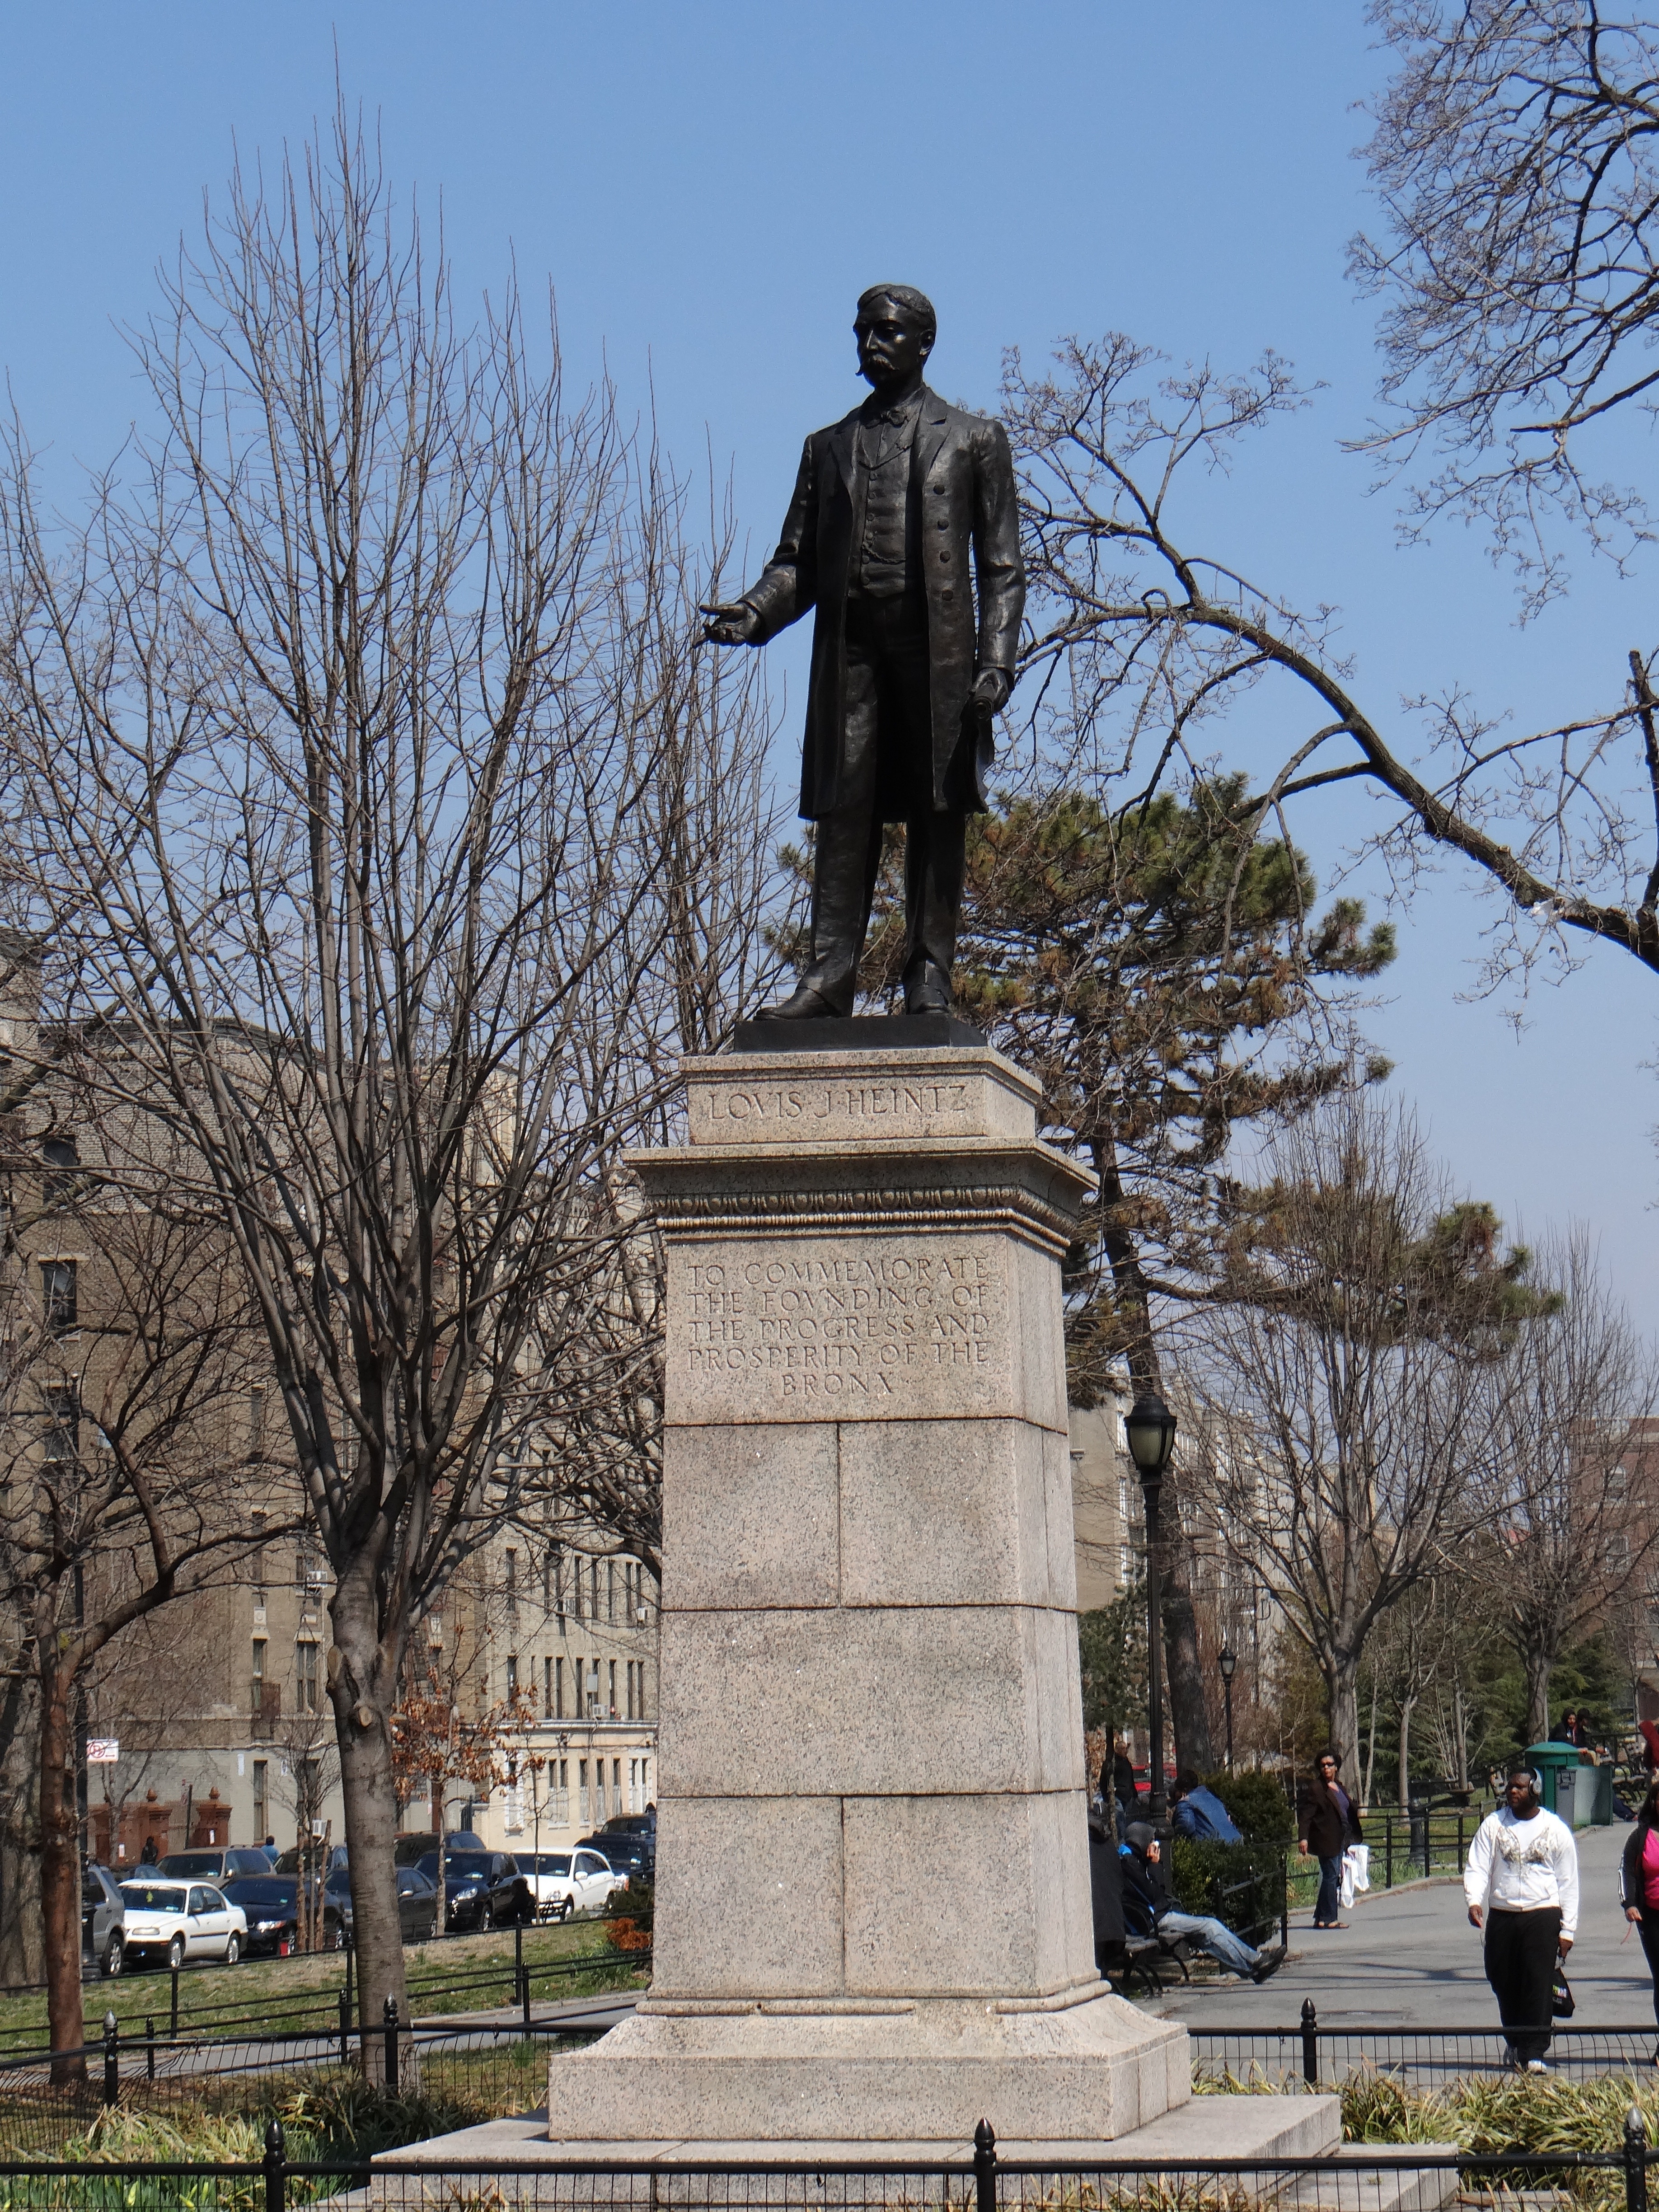 Louis Heinz statue in Joyce Kilmer park